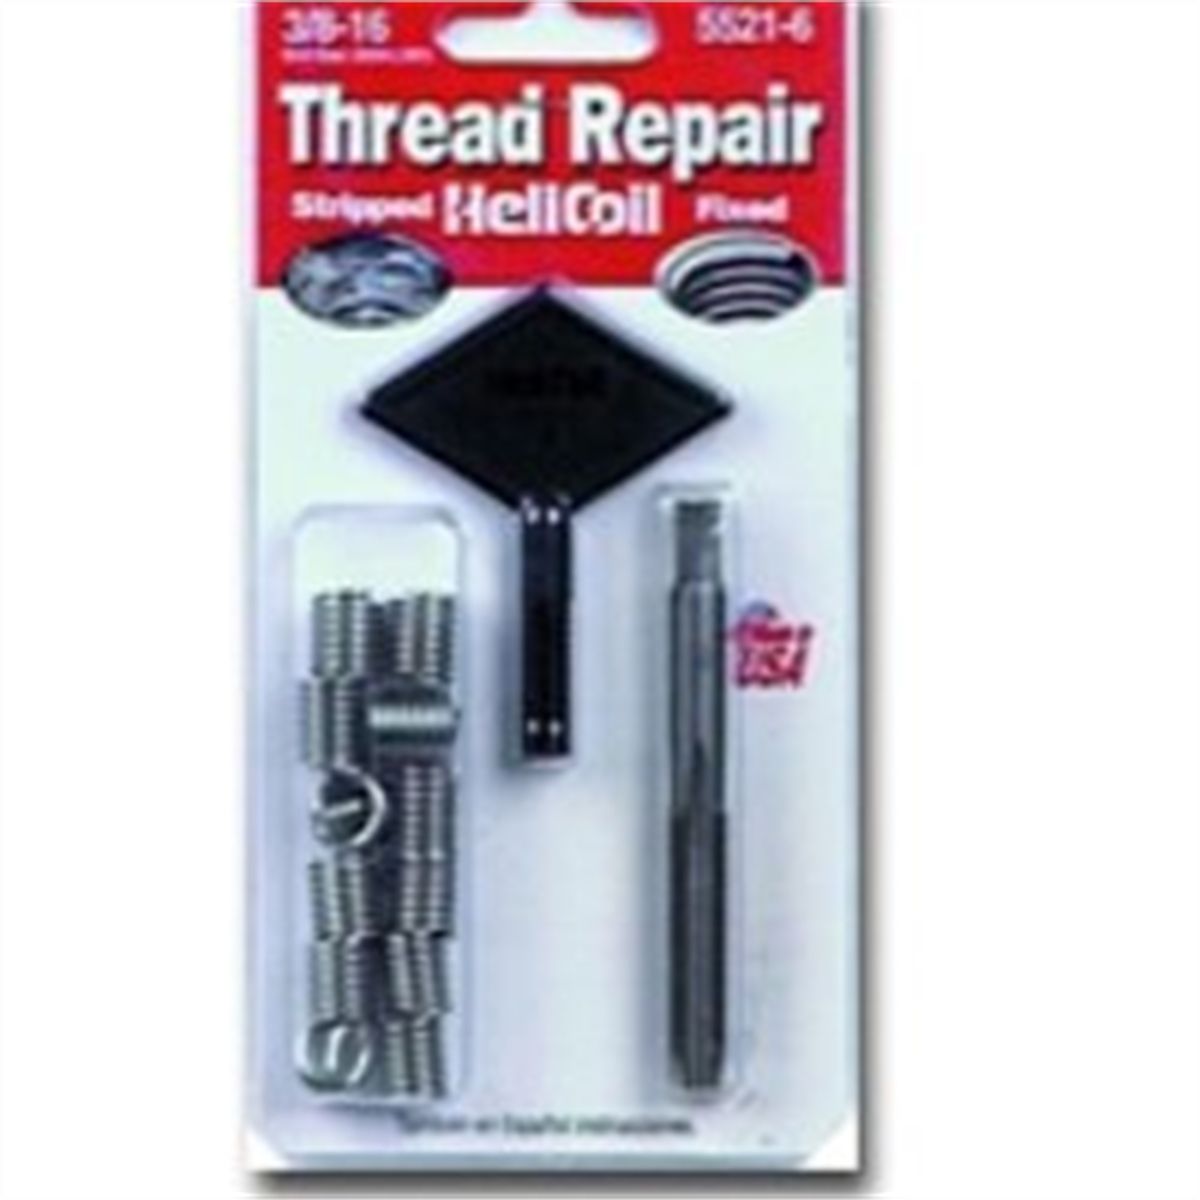 Helicoil 9/16-12 x .844 Thread Repair Kit